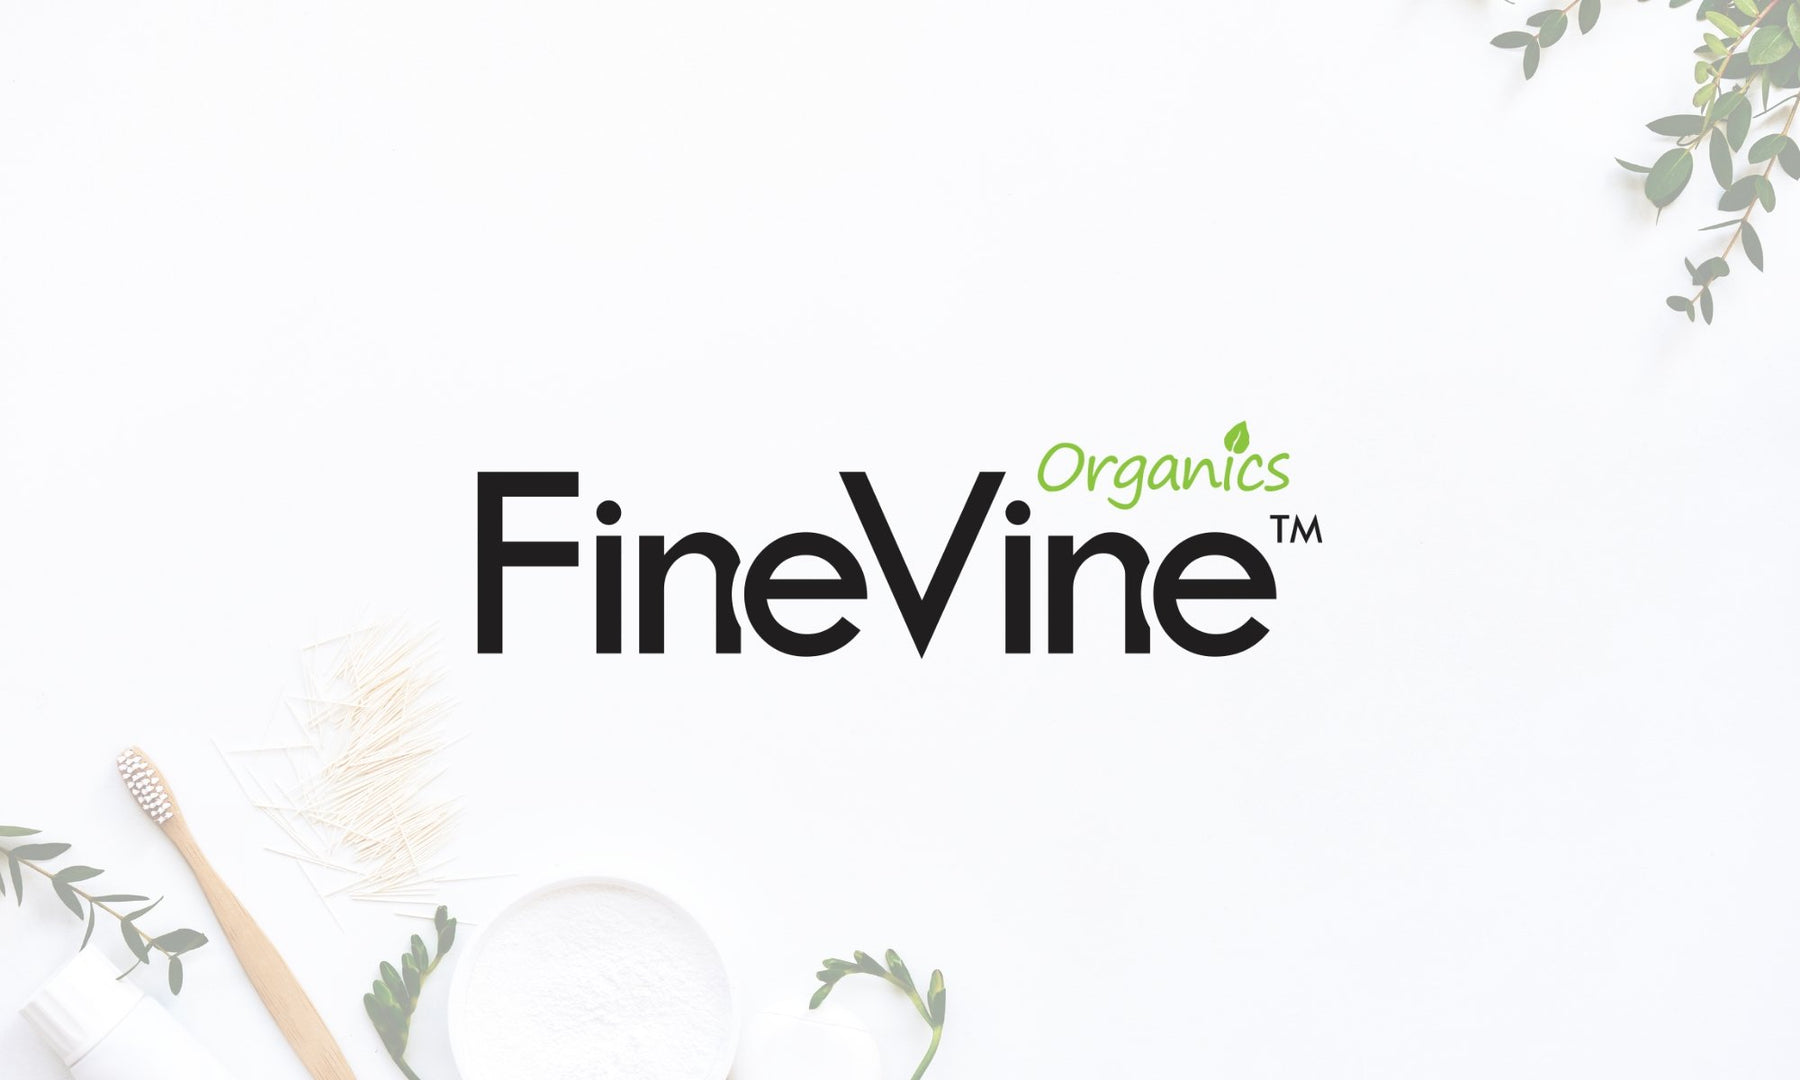 FineVine - SafeSavings